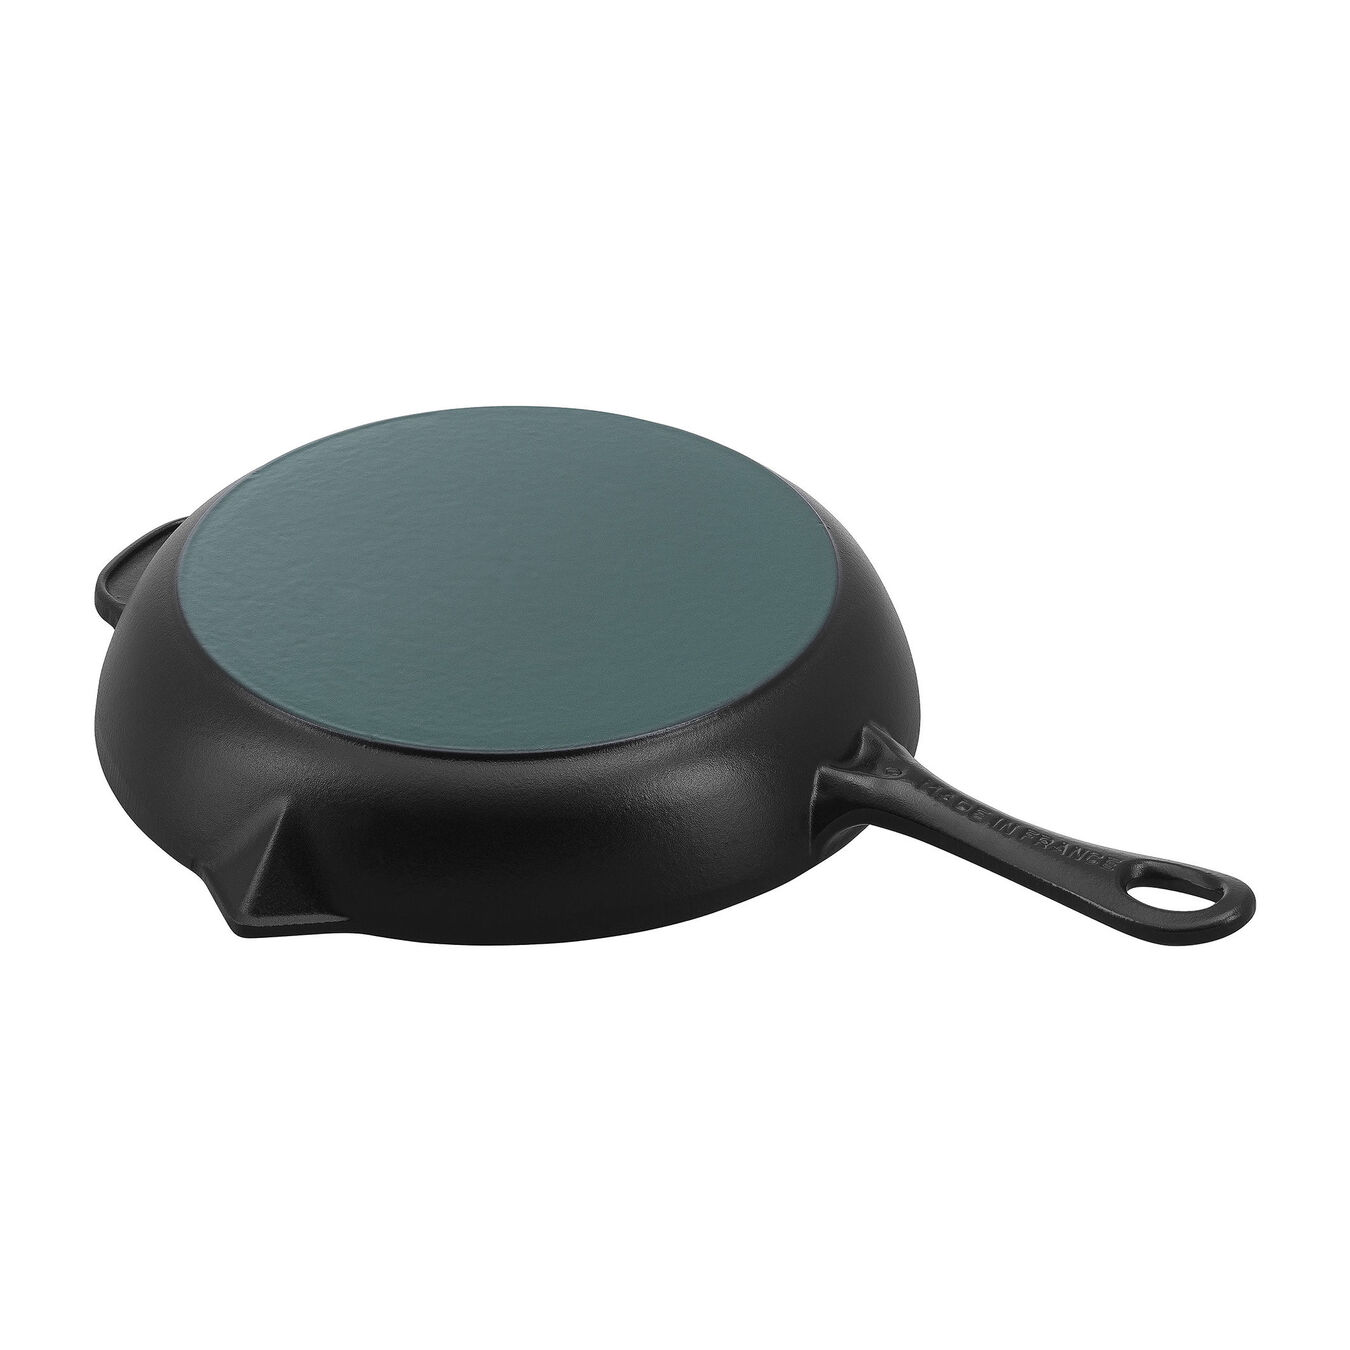 10-inch, Fry Pan, black matte,,large 2